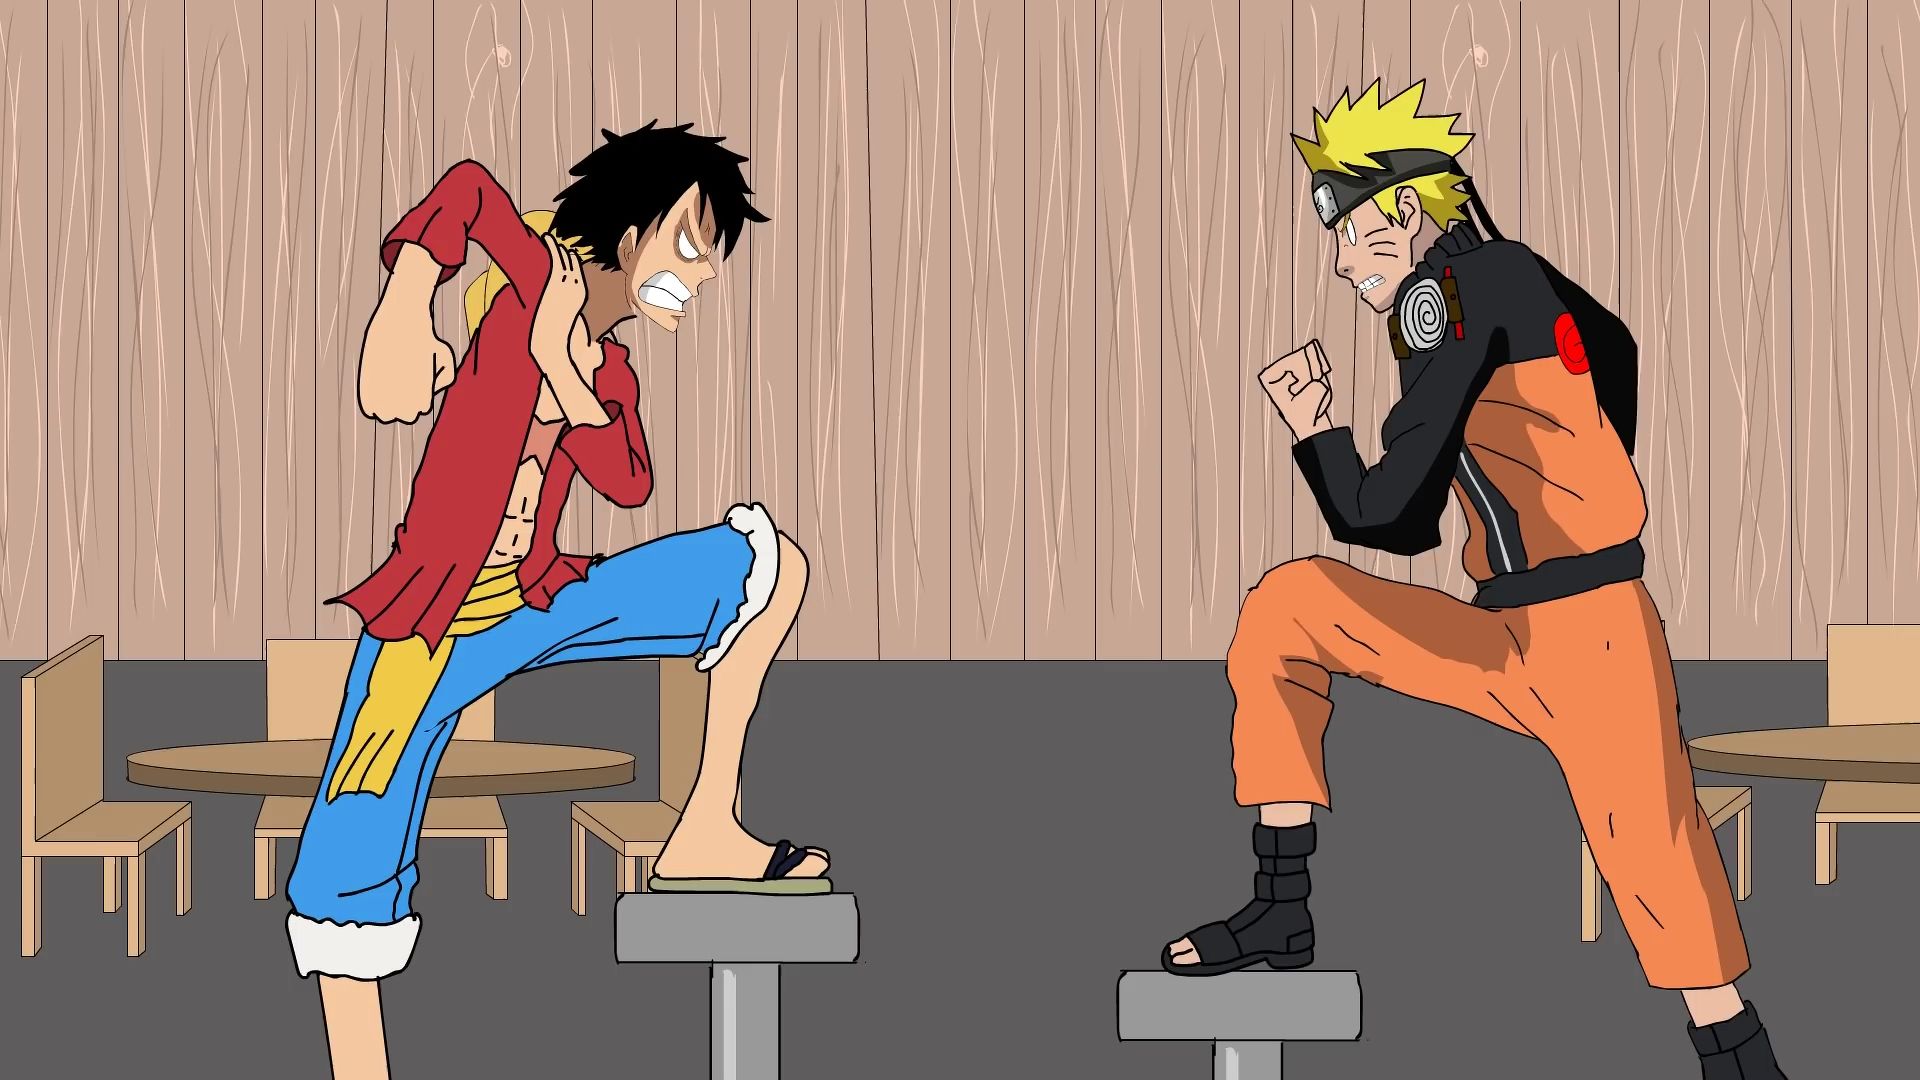 Gặp nhau Luffy và Naruto: Cuộc gặp gỡ giữa hai nhân vật nổi tiếng Naruto và Luffy sẽ khiến bạn rất hào hứng. Bạn sẽ chứng kiến sự phô diễn các kỹ năng chiến đấu, tình bạn và sự chân thành đáng yêu của cả hai.